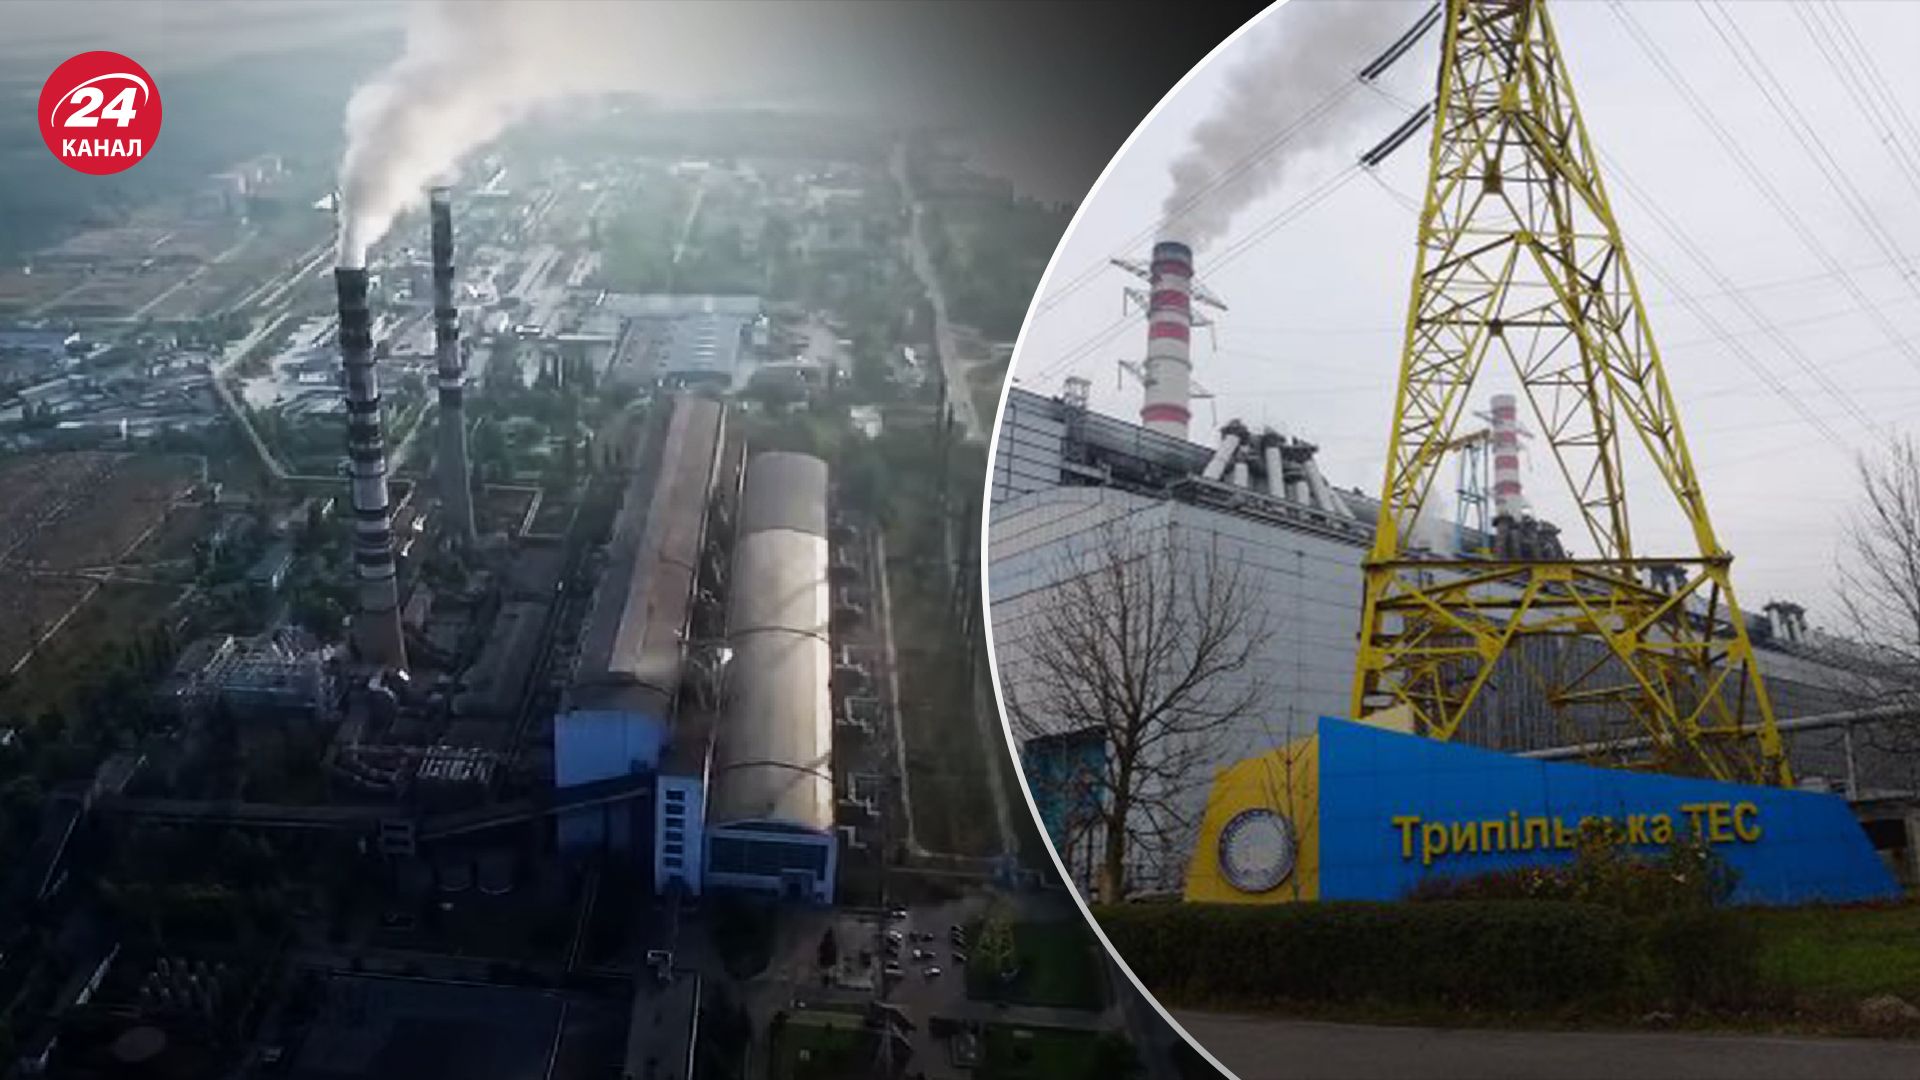 Во время массированной атаки 11 апреля Россия уничтожила Трипольскую ТЭС